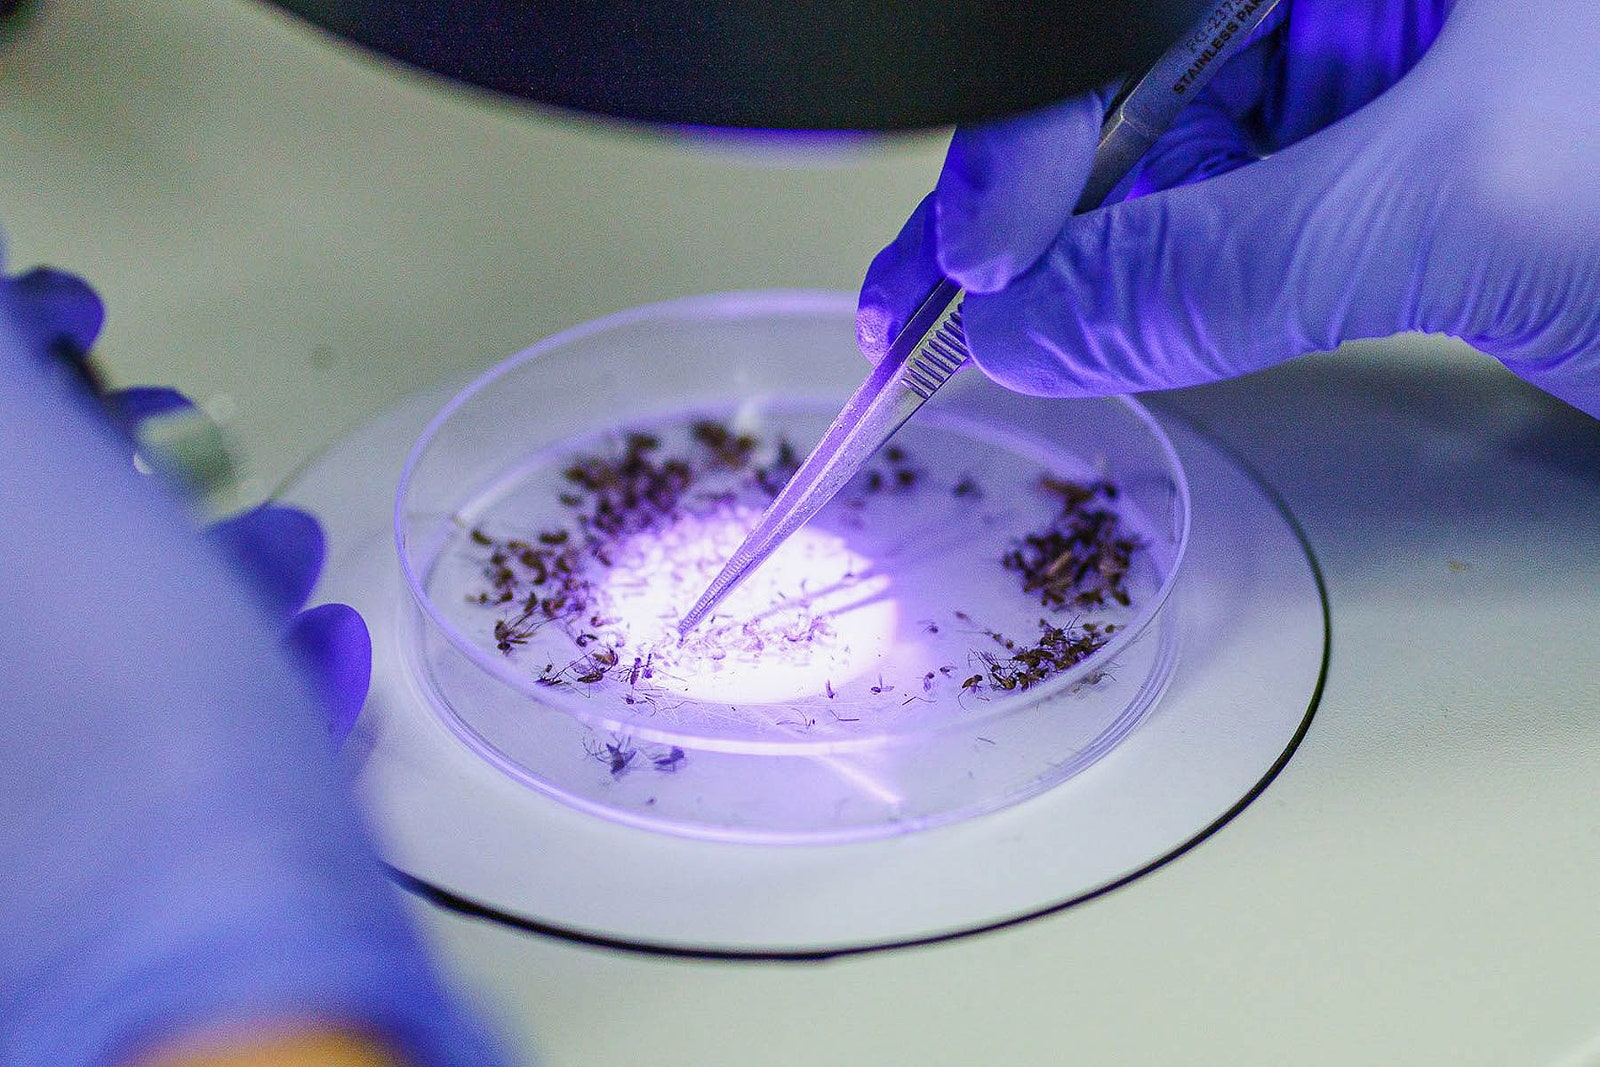 Un hombre con guantes de látex azules atrapa mosquitos en una placa de Petri con pinzas de metal